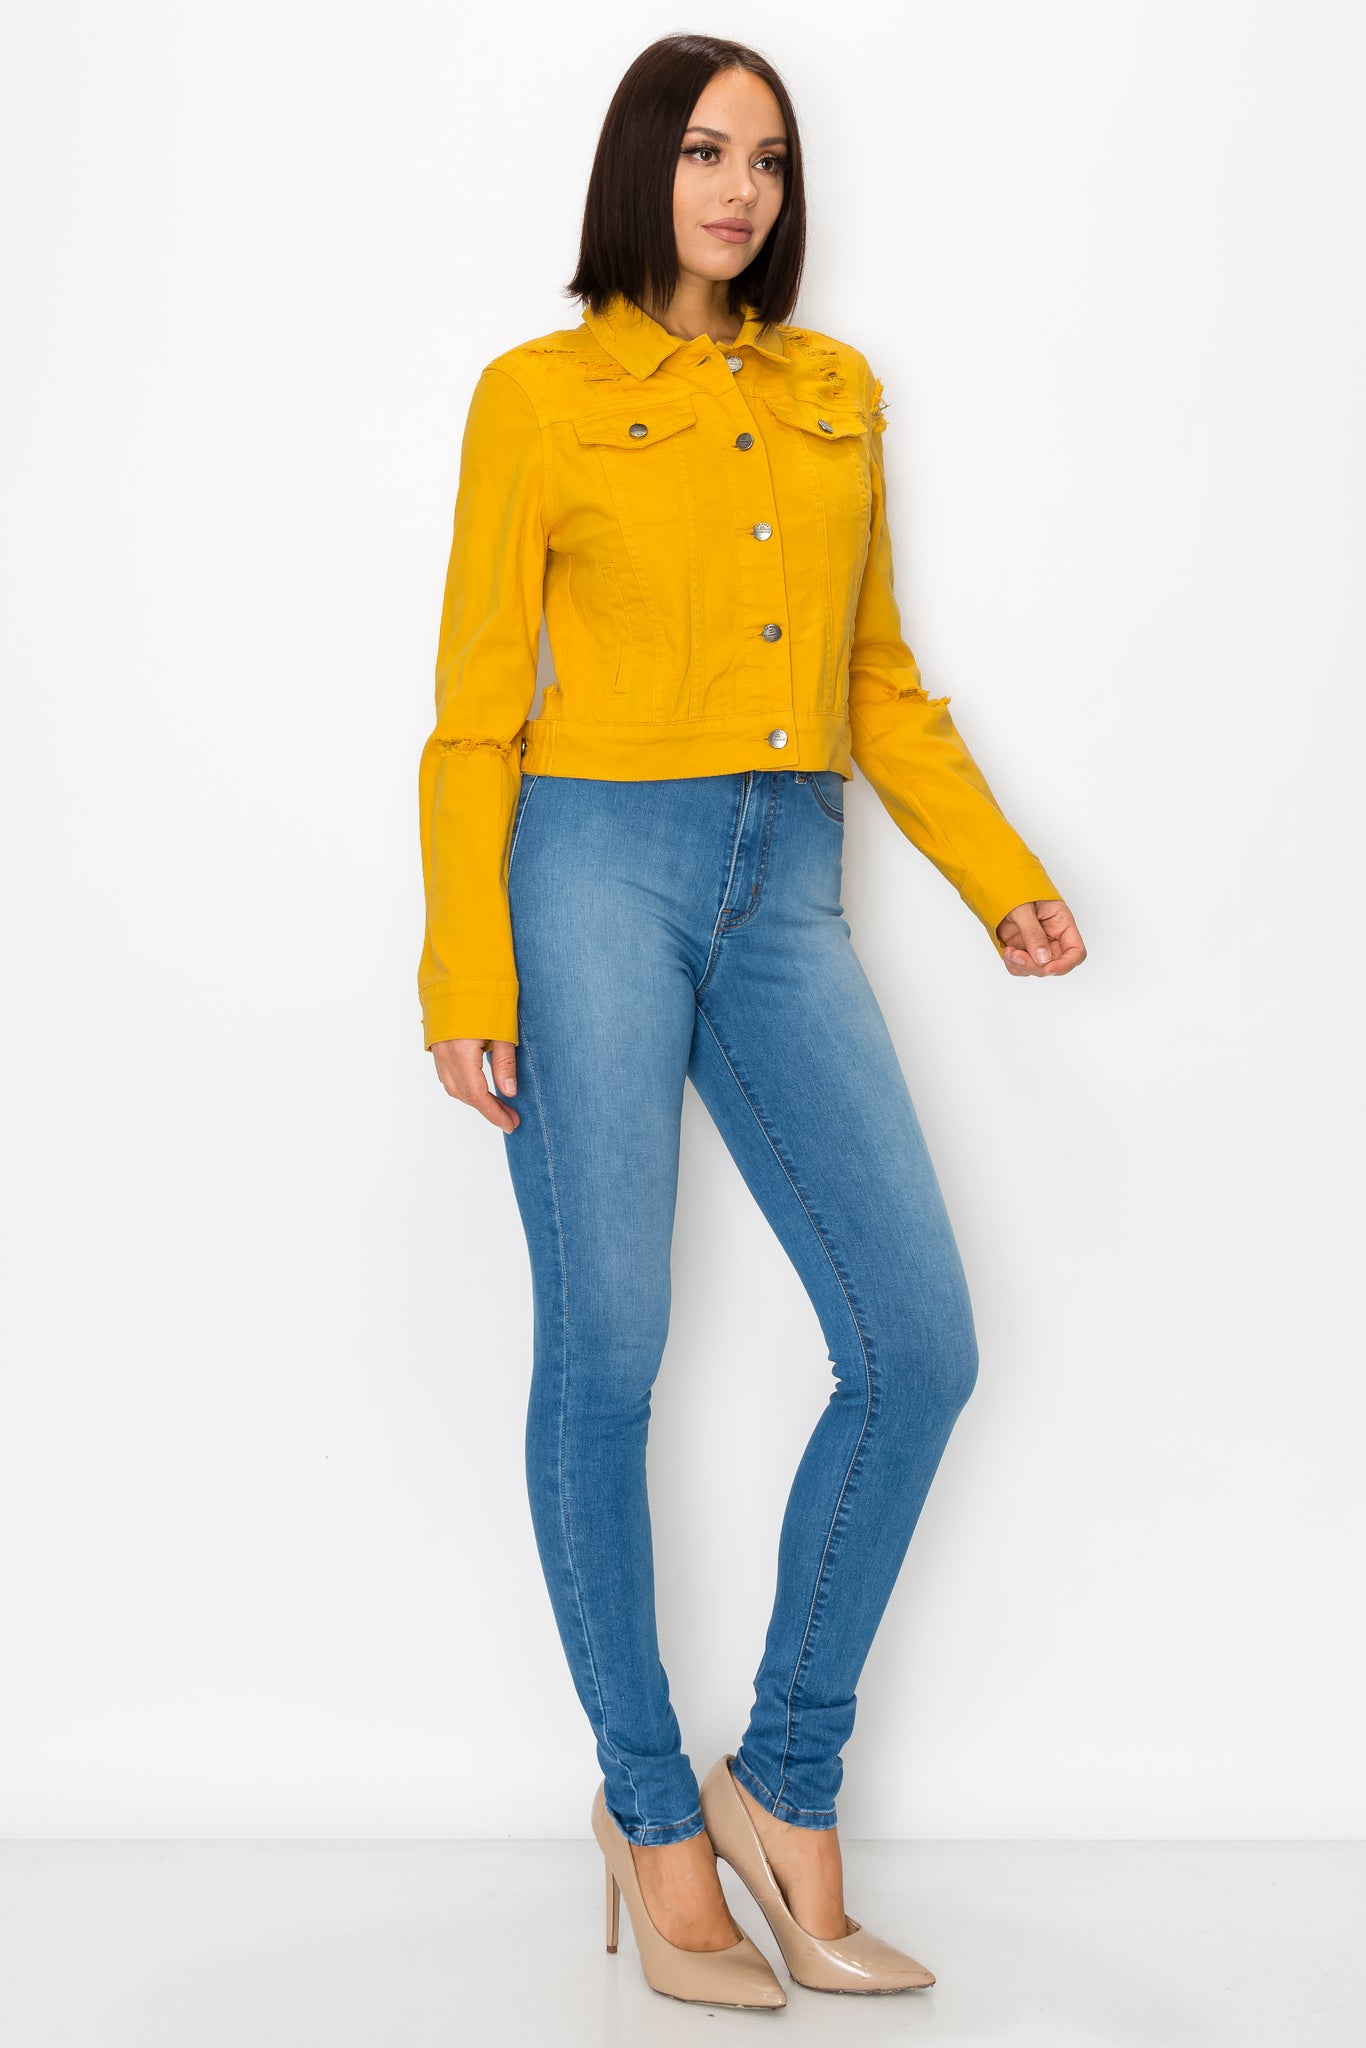 Unique Bargains Women's Button Down Long Sleeve Cropped Denim Jacket M  Yellow - Walmart.com